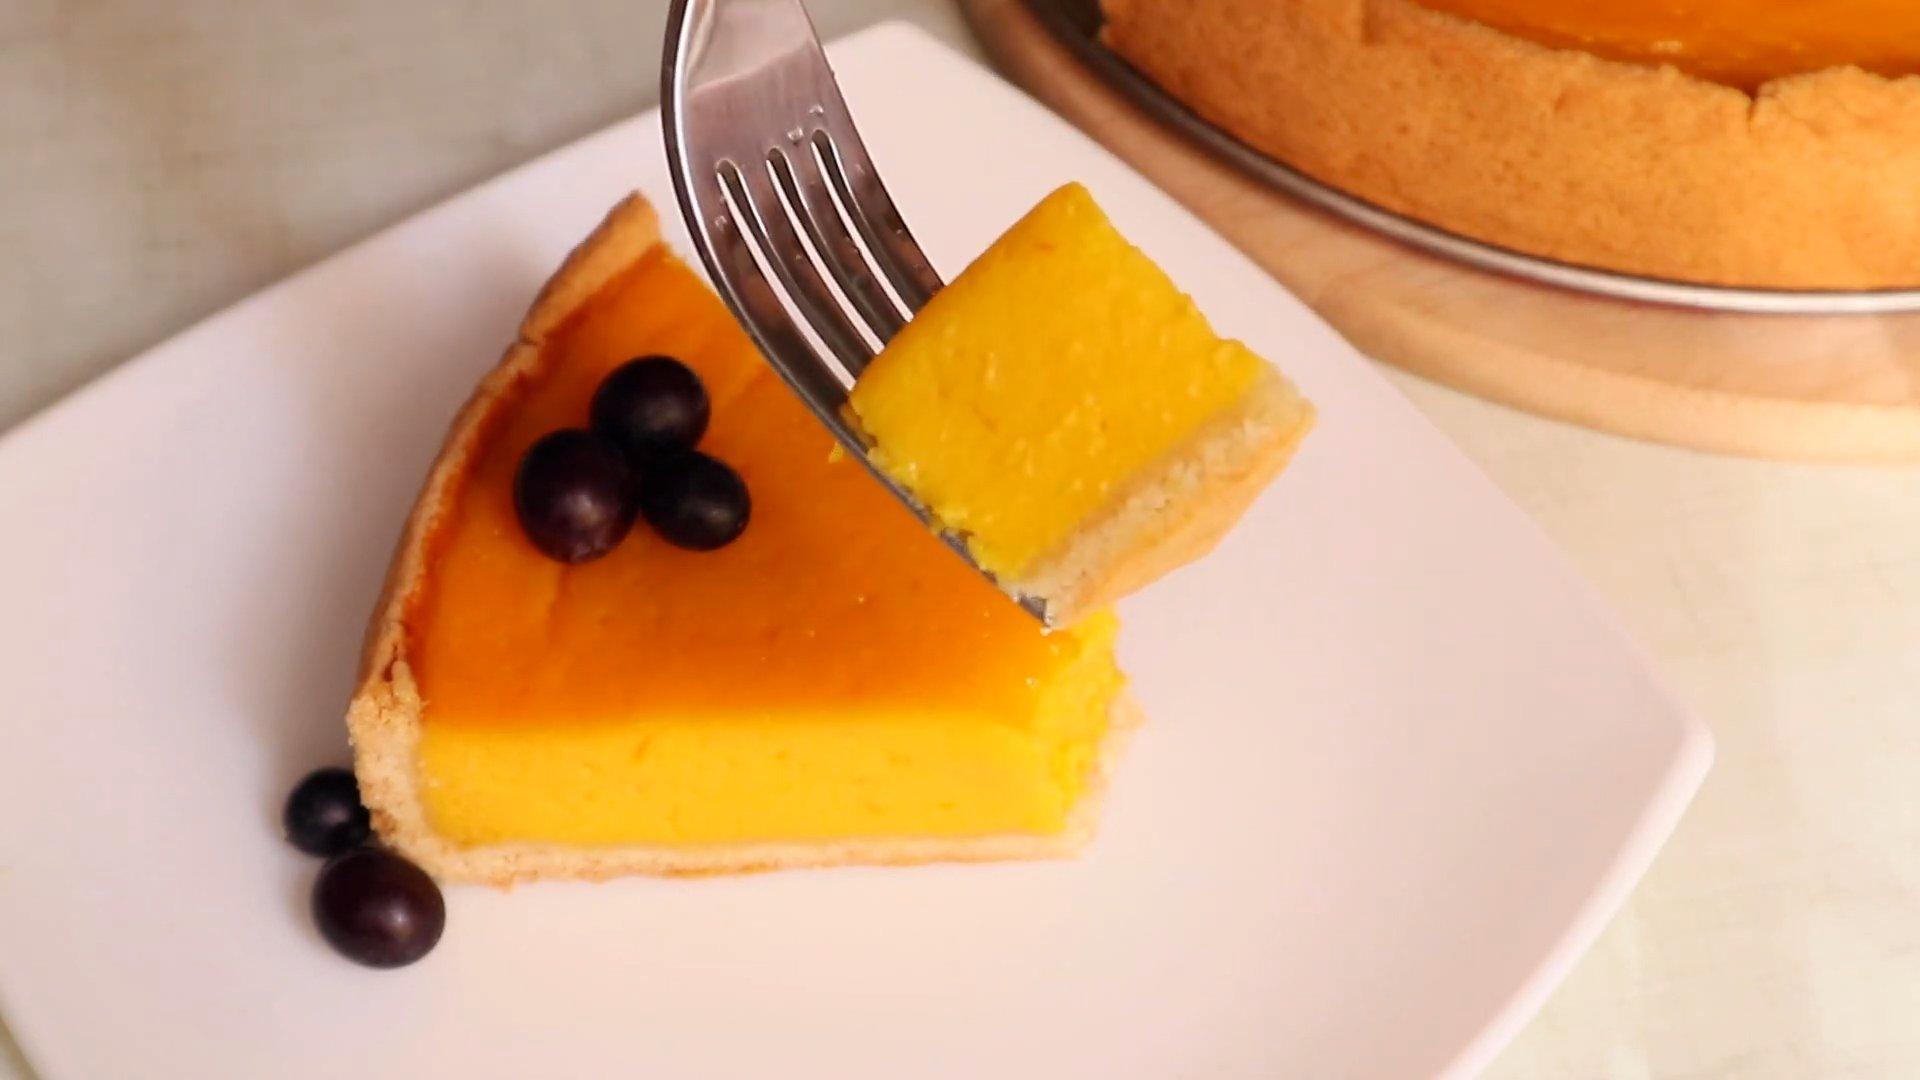 Тыквенный пирог с лимоном - фото